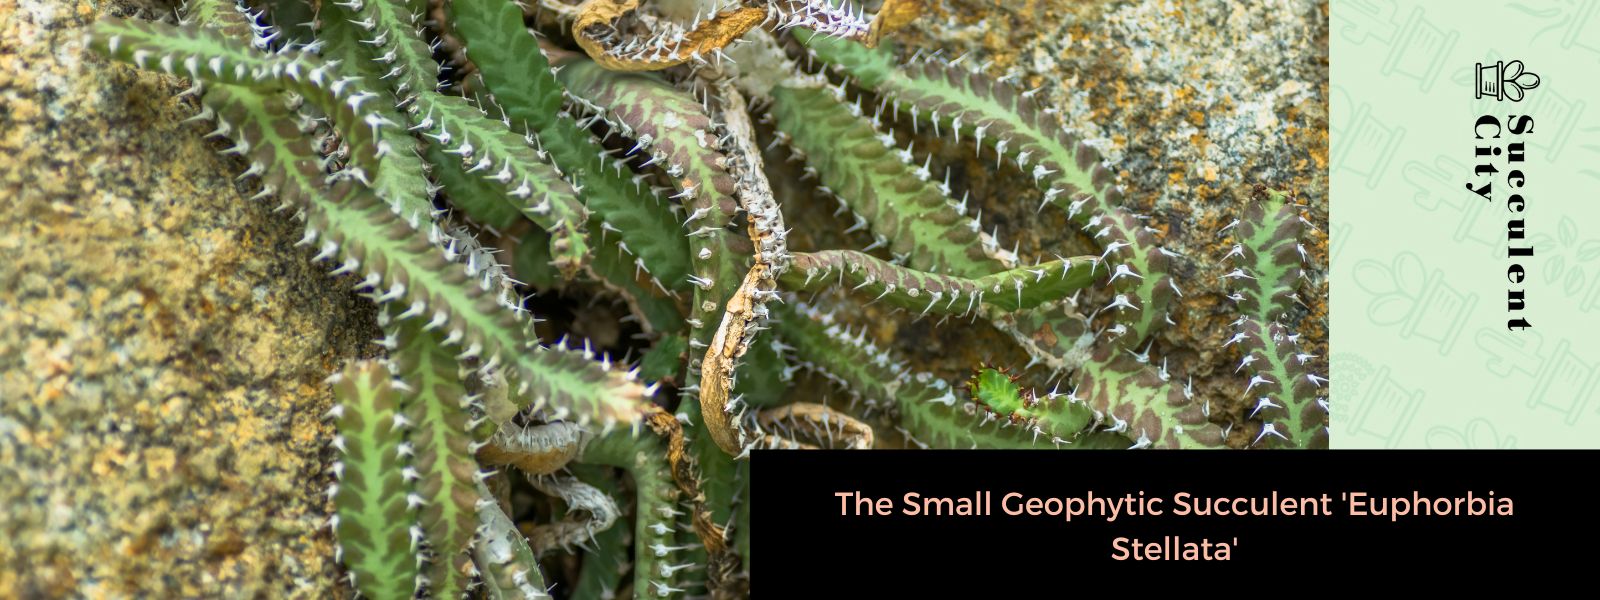 La pequeña suculenta geofítica “Euphorbia Stellata”